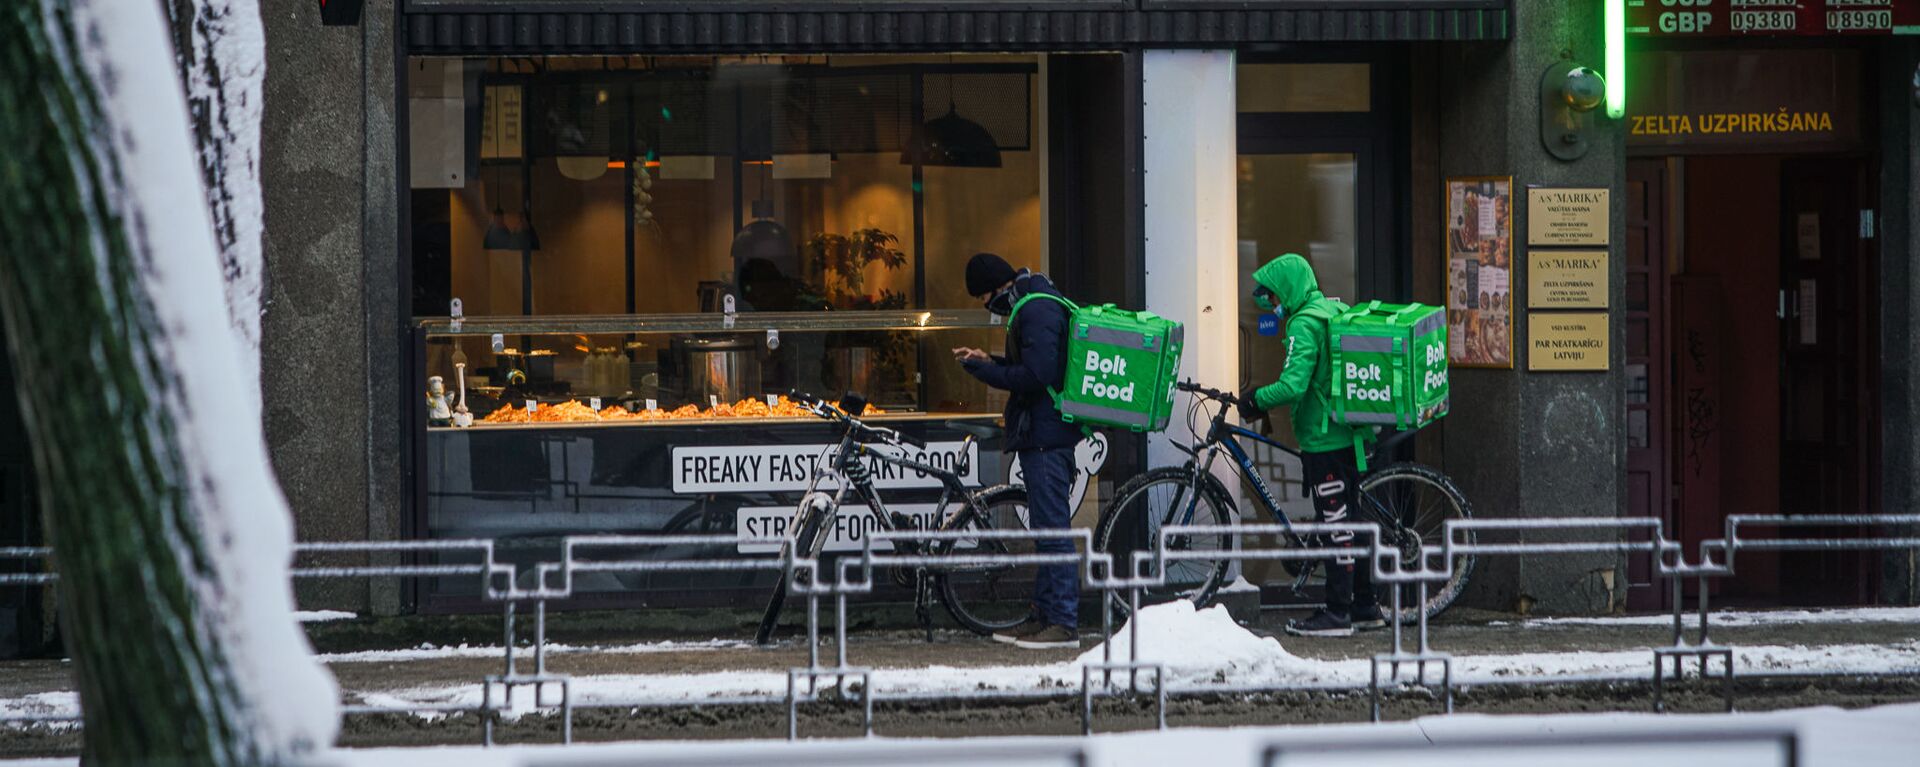 Доставщики еды на велосипедах ожидают готовности заказа - Sputnik Latvija, 1920, 11.02.2021